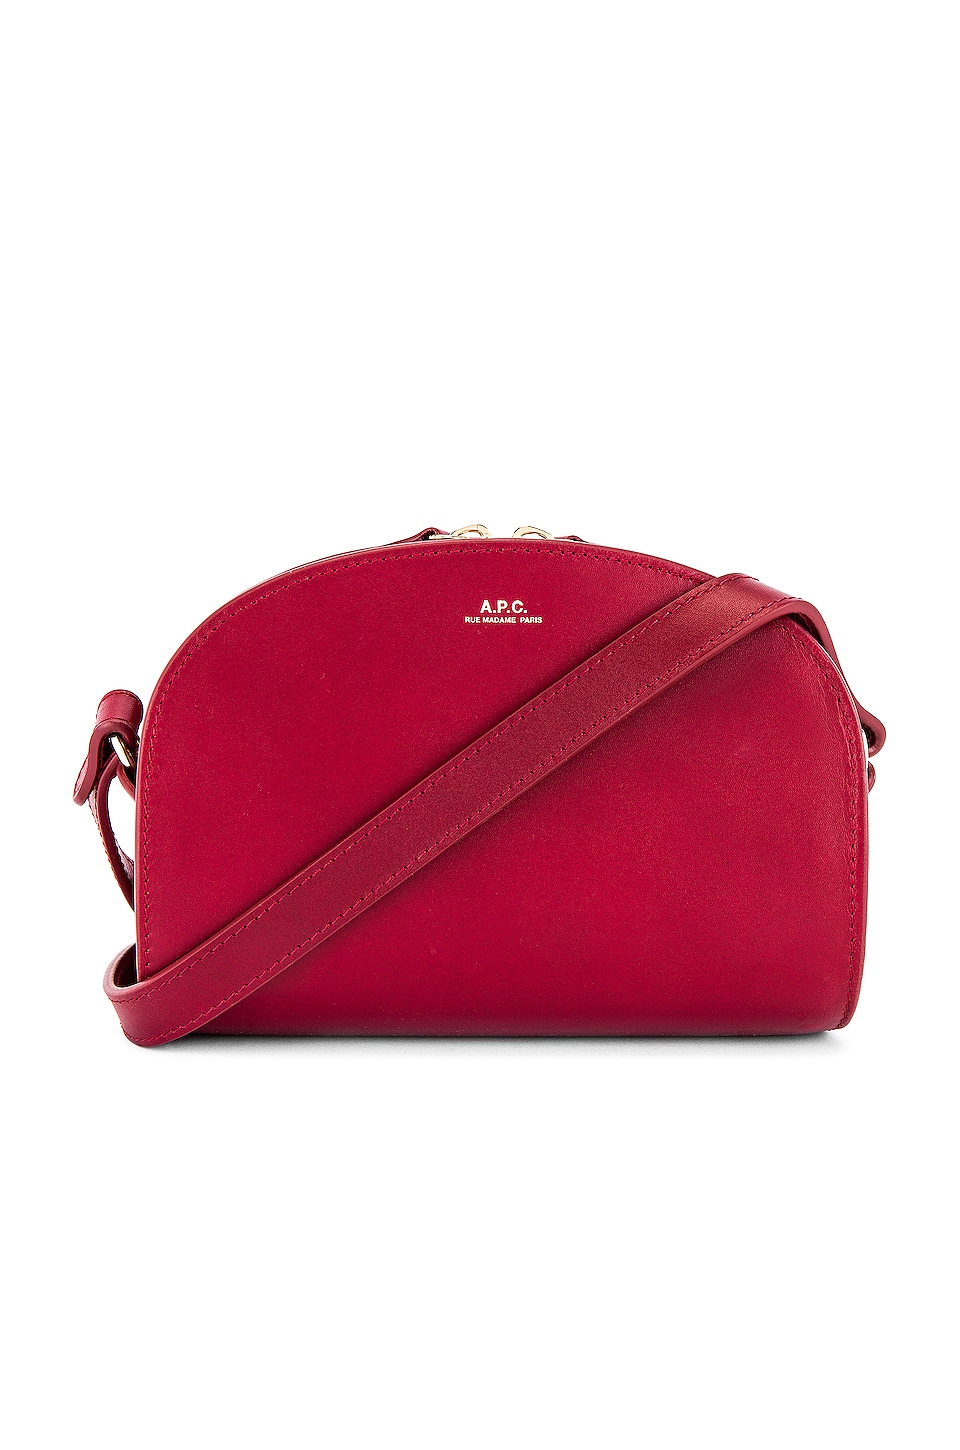 A.P.C. Sac Demi Lune Mini Bag in Rouge Fonce | REVOLVE